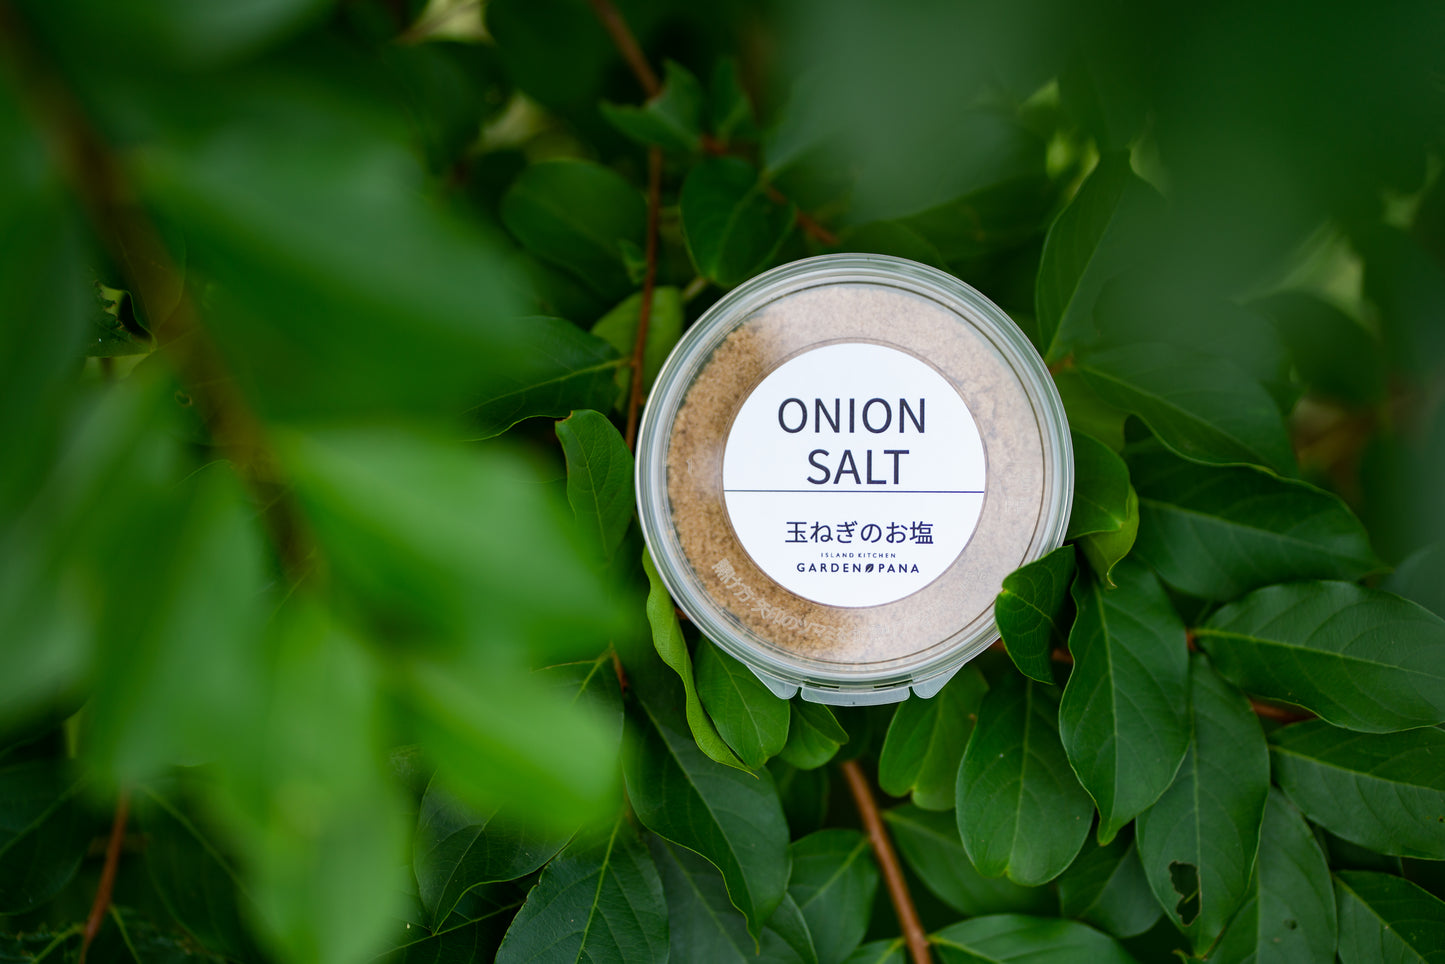 ONION SALT 玉ねぎのお塩